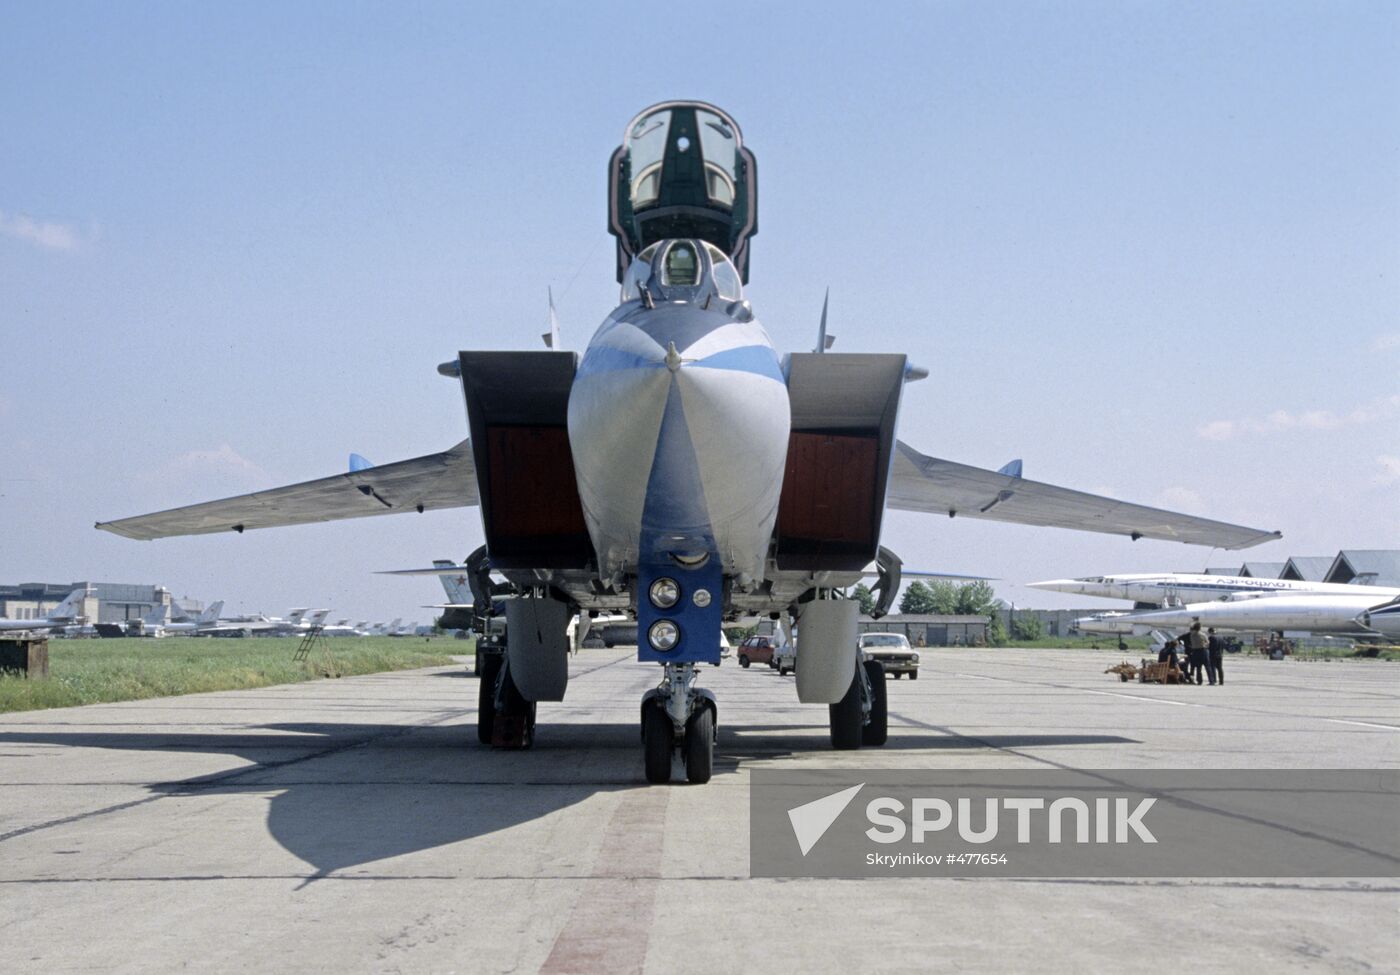 A Mikoyan-Gurevich MiG-31 Foxhound fighter-interceptor